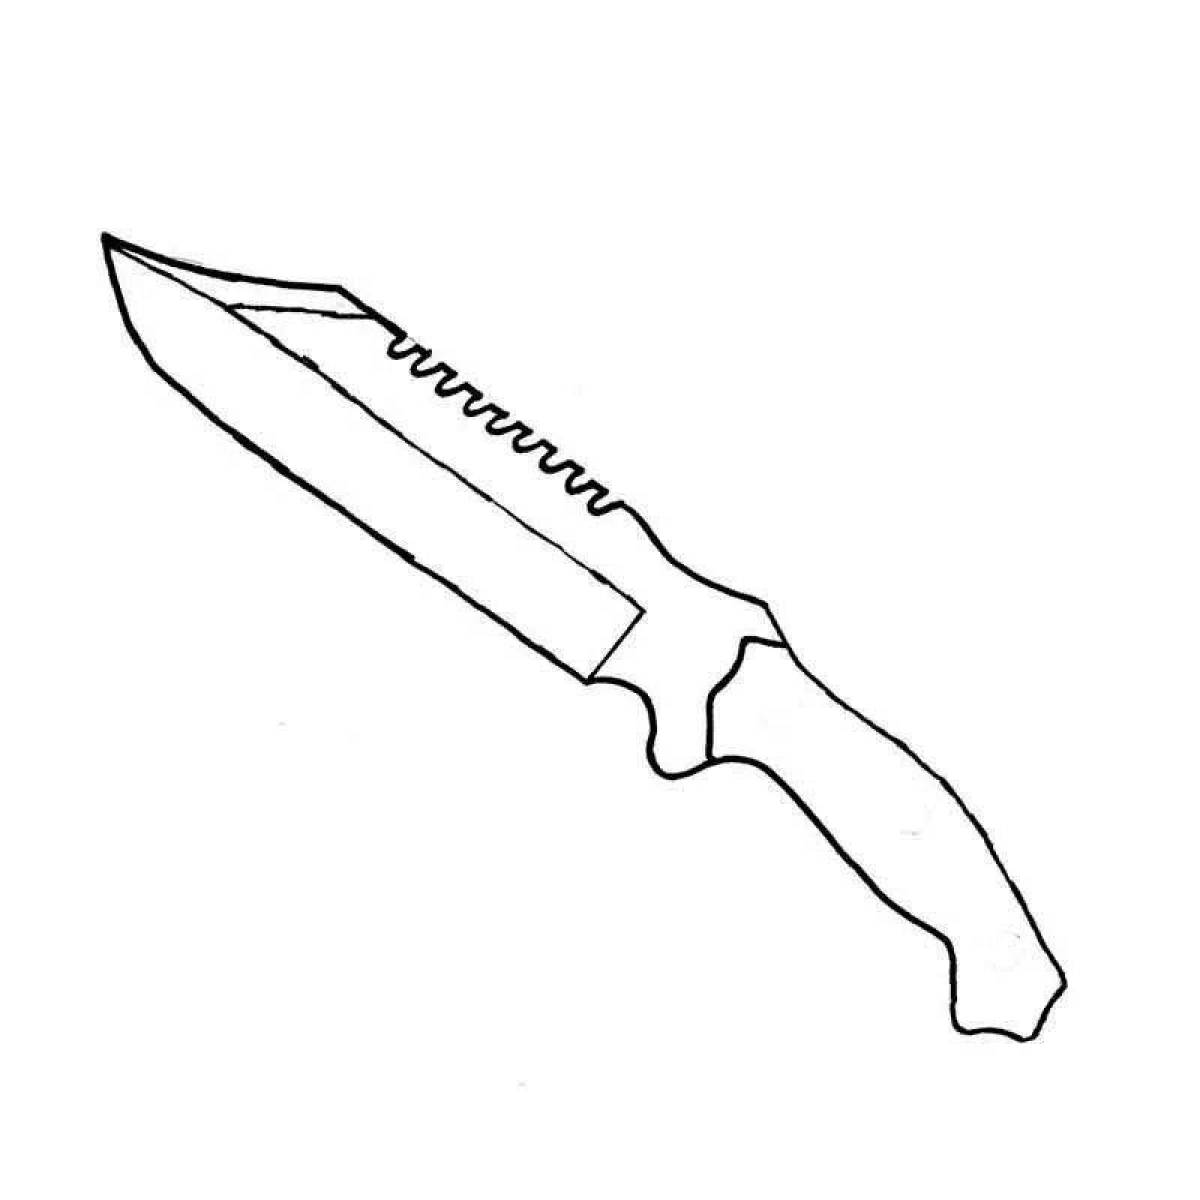 Раскраски стендофф ножи. Раскраски Standoff 2 ножи танто. Нож Боуи чертеж. Раскраска нож Боуи КС го. Раскраска ножик танто.